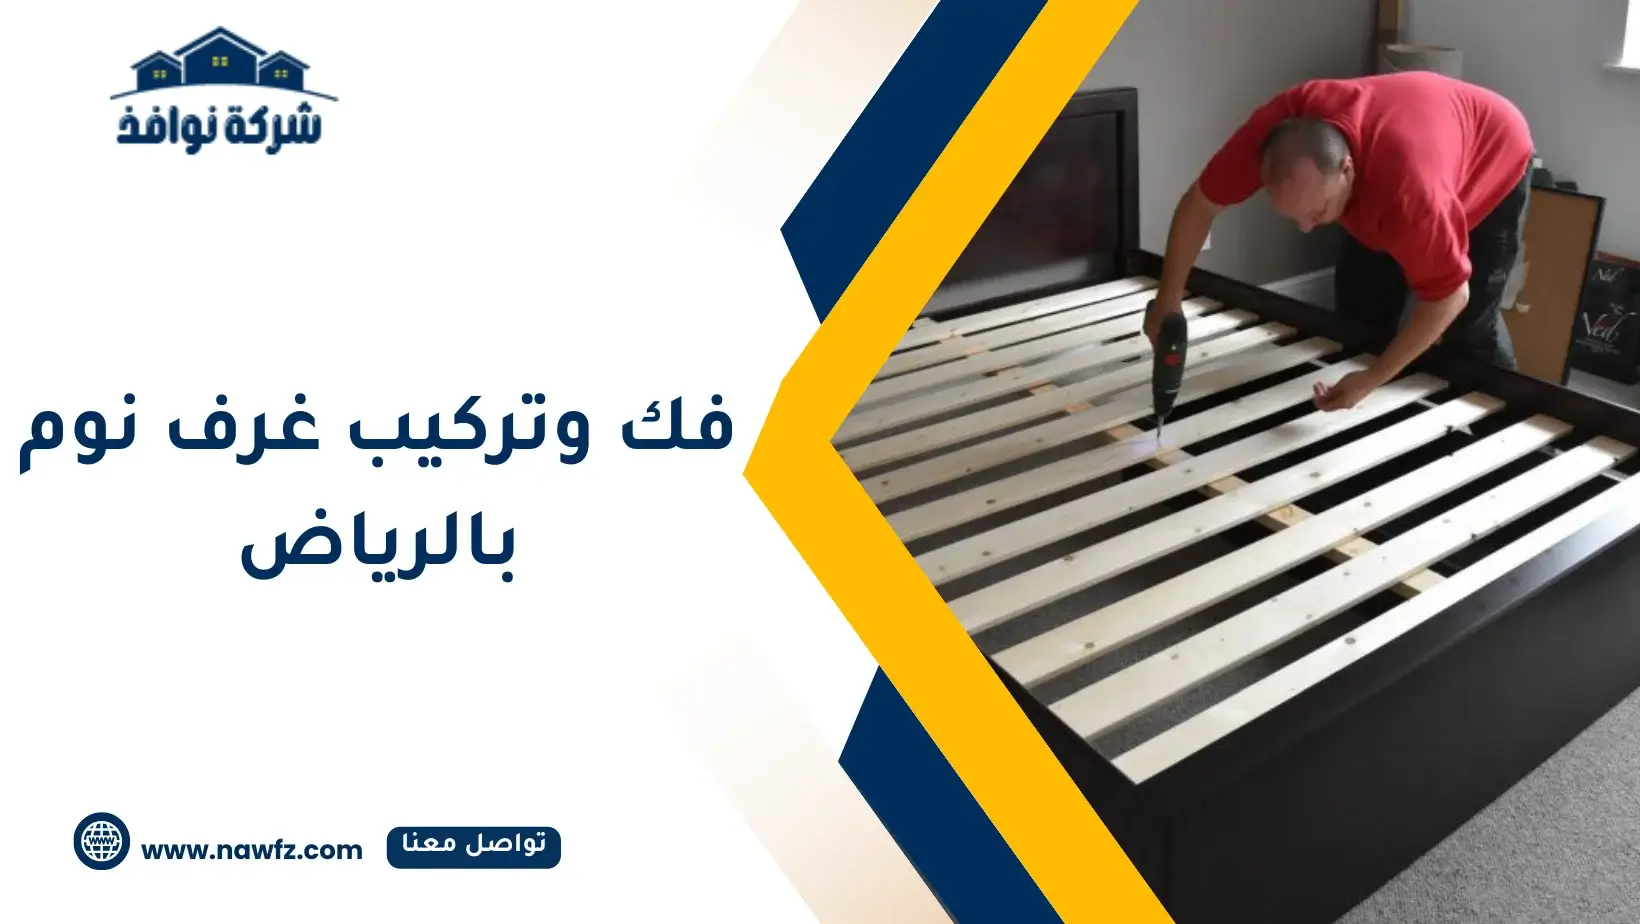  فك وتركيب غرف نوم في الرياض